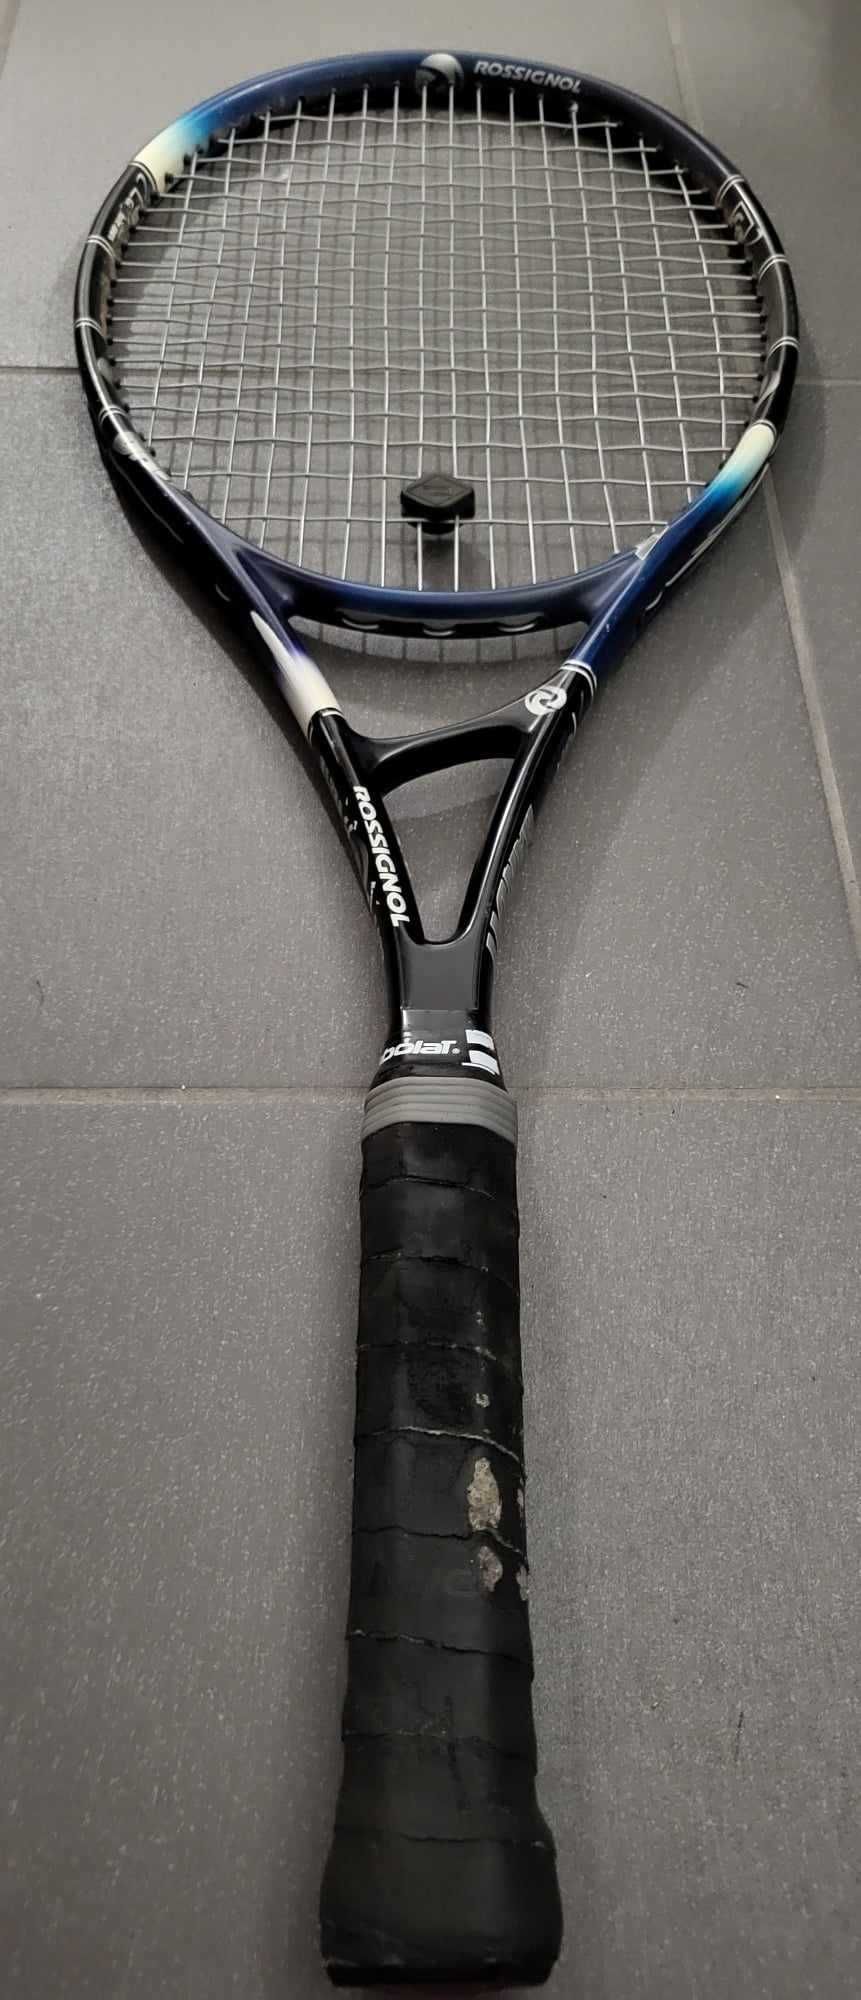 Rakieta tenisowa Rossignol Graphite Bandit używana bardzo lekka